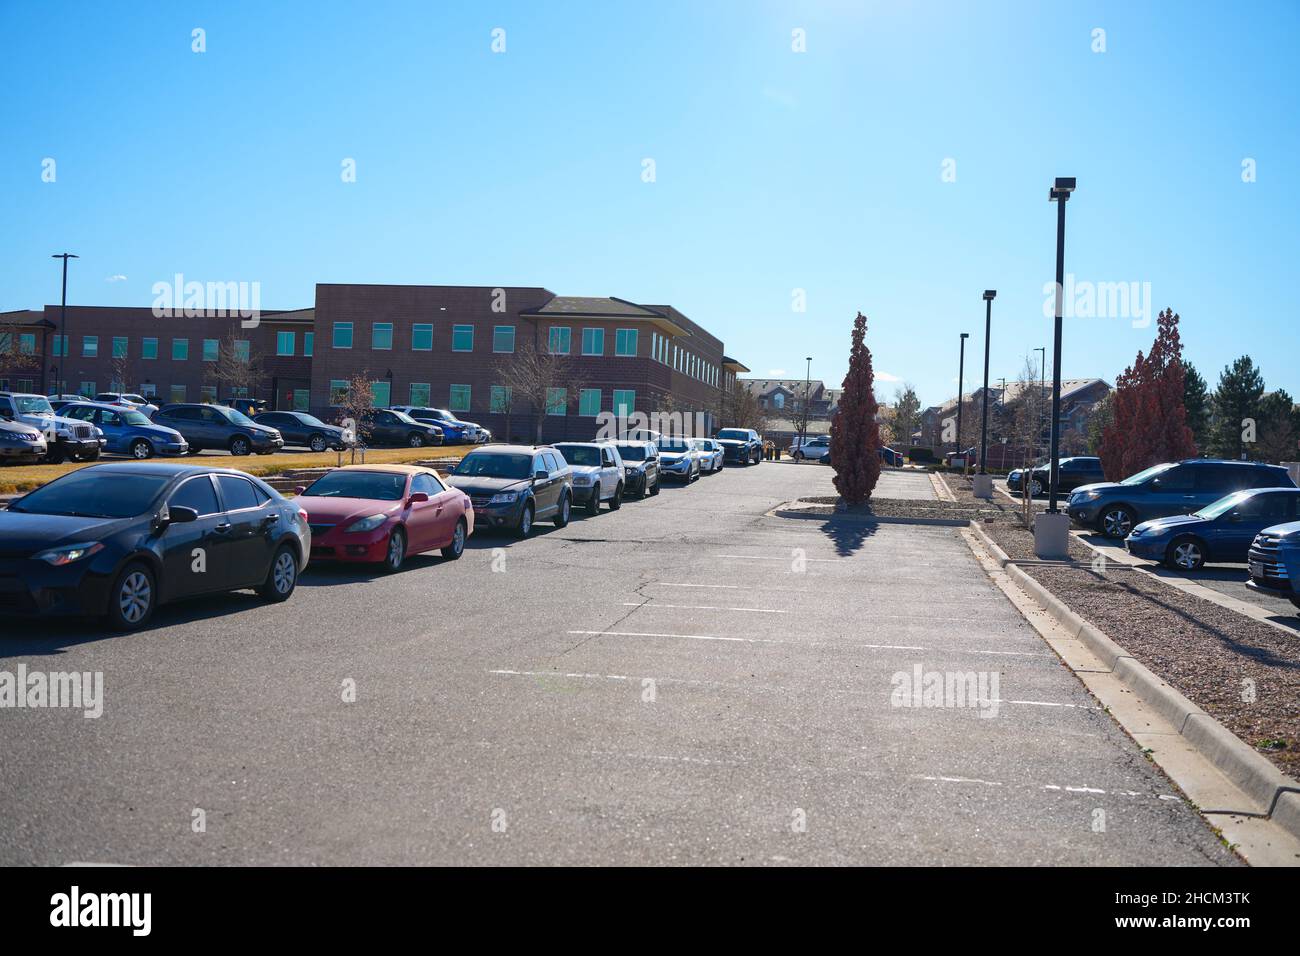 Un paesaggio di auto moderne in attesa in fila su un parcheggio in una giornata di sole Foto Stock